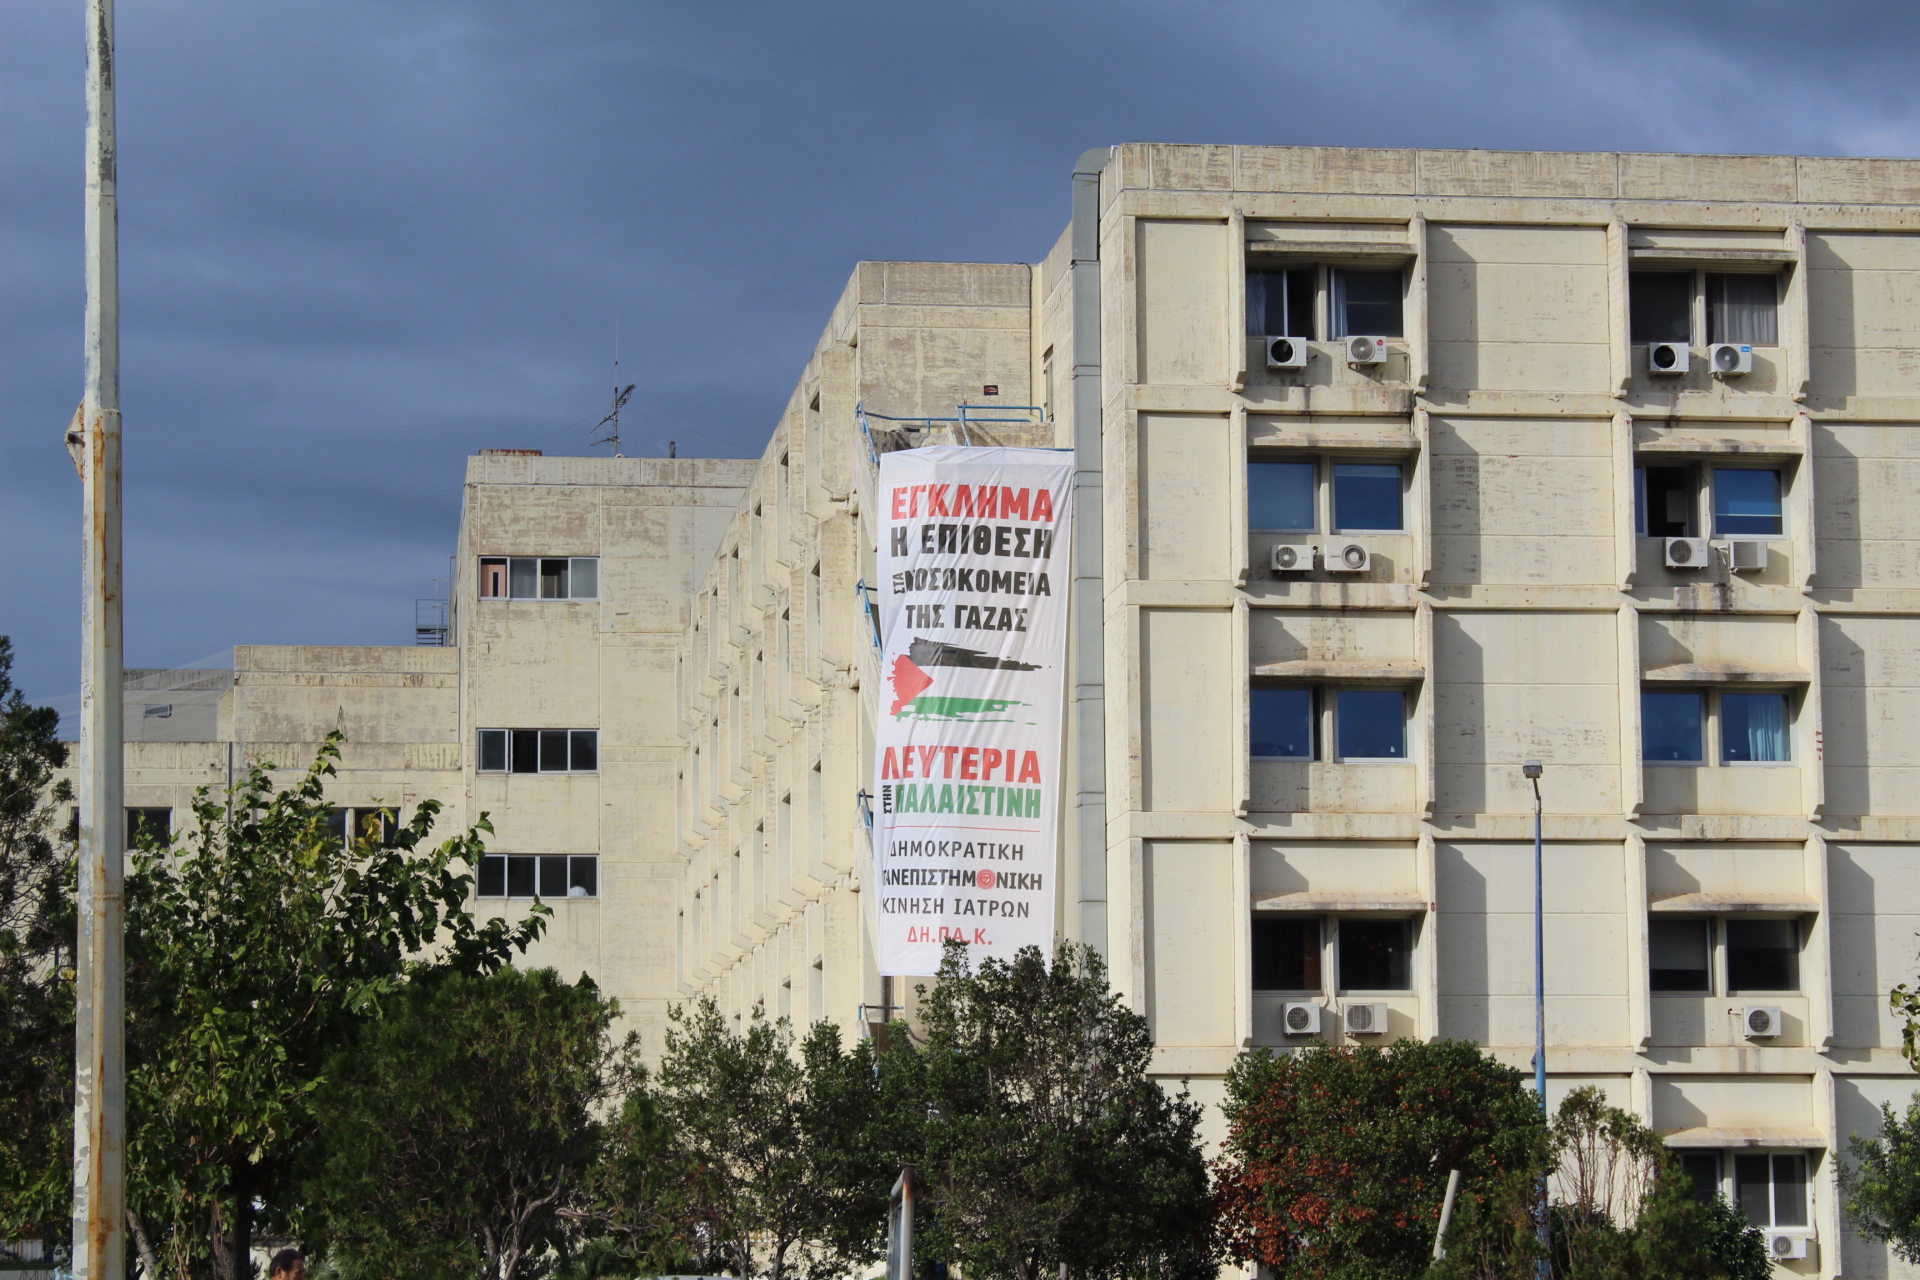 Πάτρα: Τεράστιο πανό αλληλεγγύης στο νοσοκομείο του Ρίου - «Έγκλημα η επίθεση στα Νοσοκομεία της Γάζας! Λευτεριά στην Παλαιστίνη!»